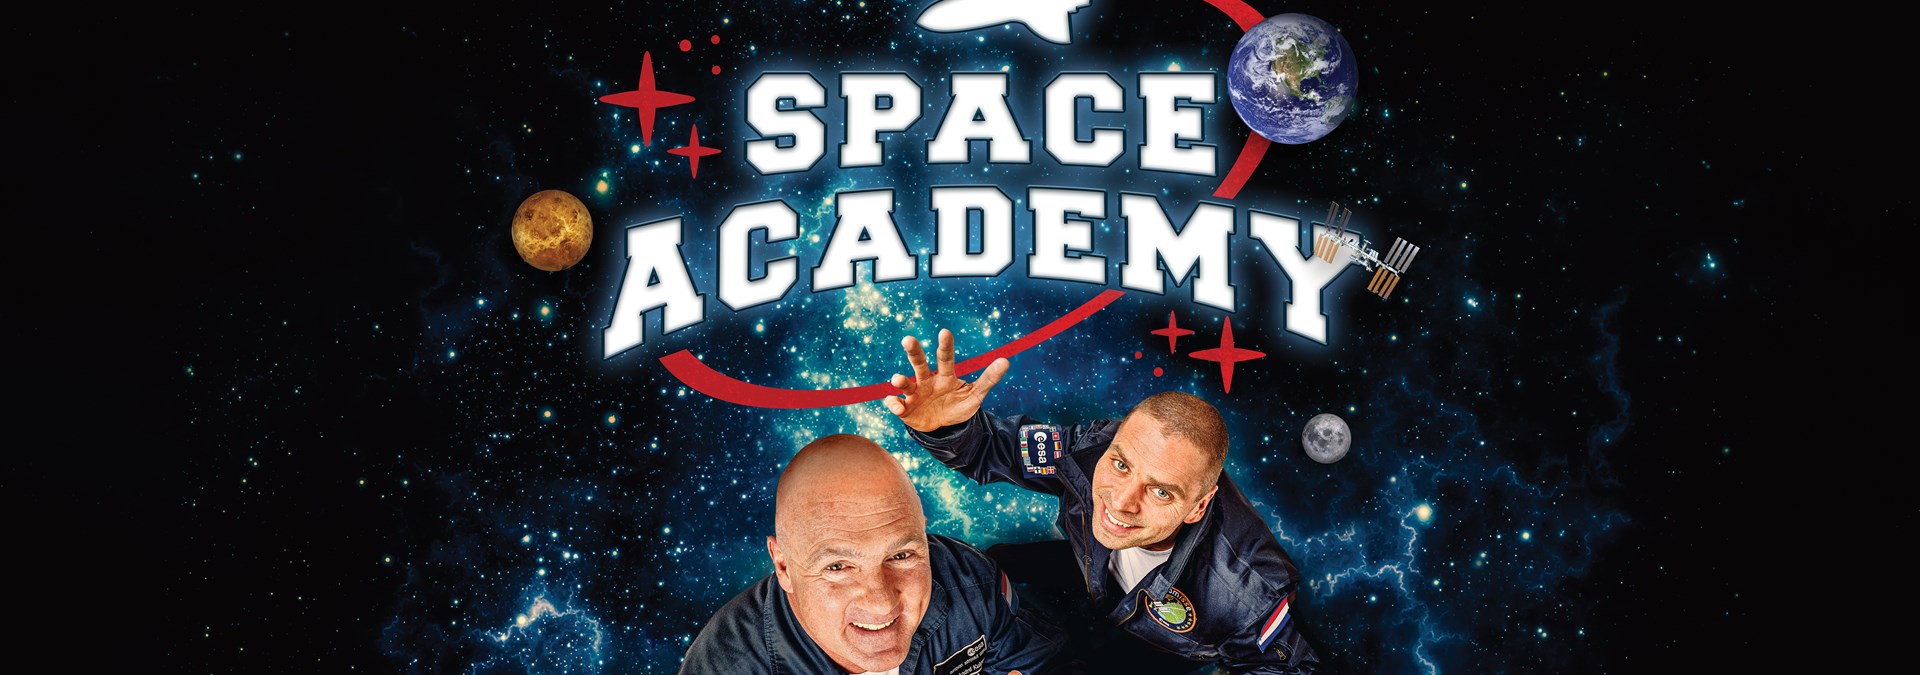 Jan15 GZ Space Academy (6)